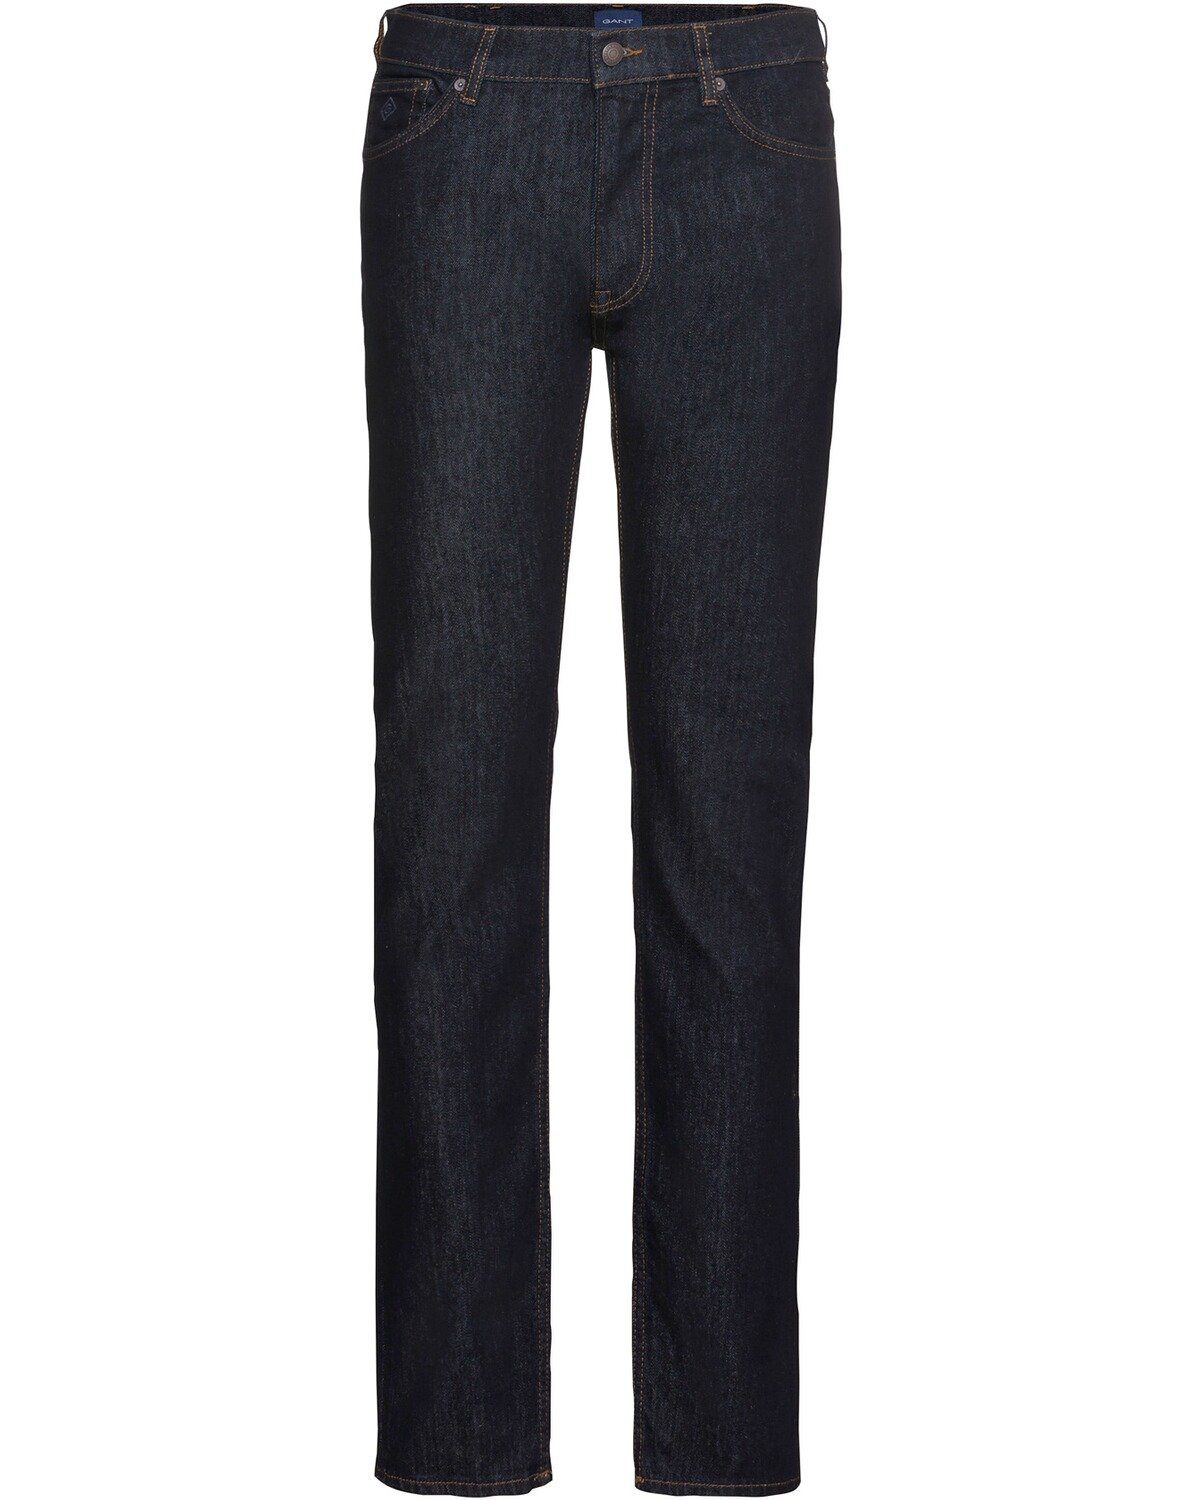 Jeans Gant Arley Darkblue 5-Pocket-Jeans